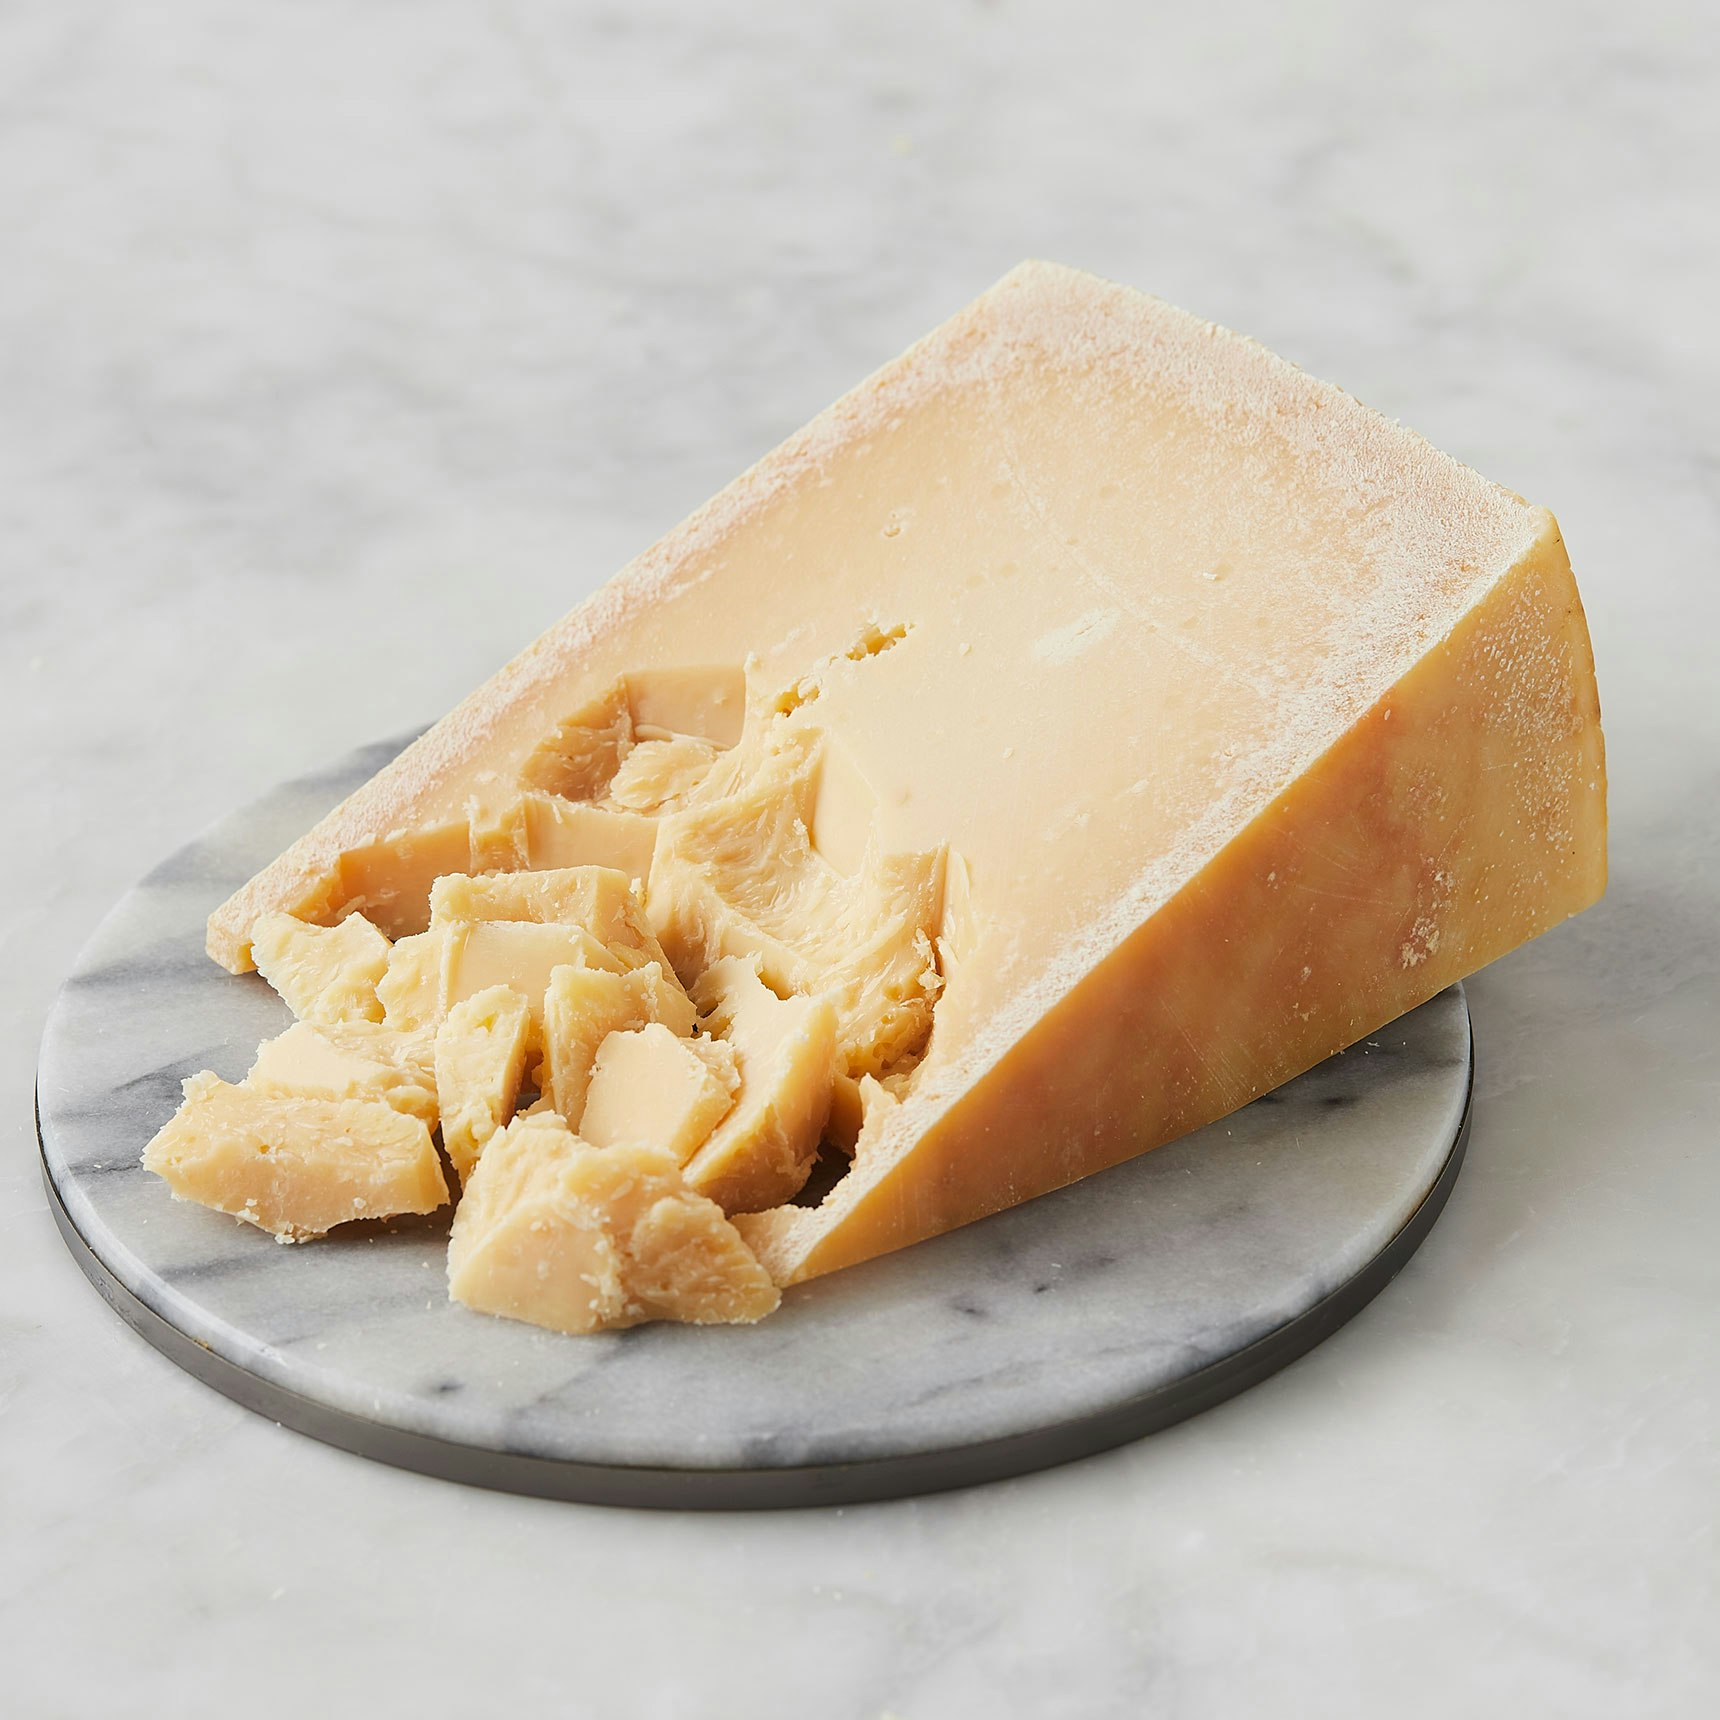 mitica KM 39 cheese